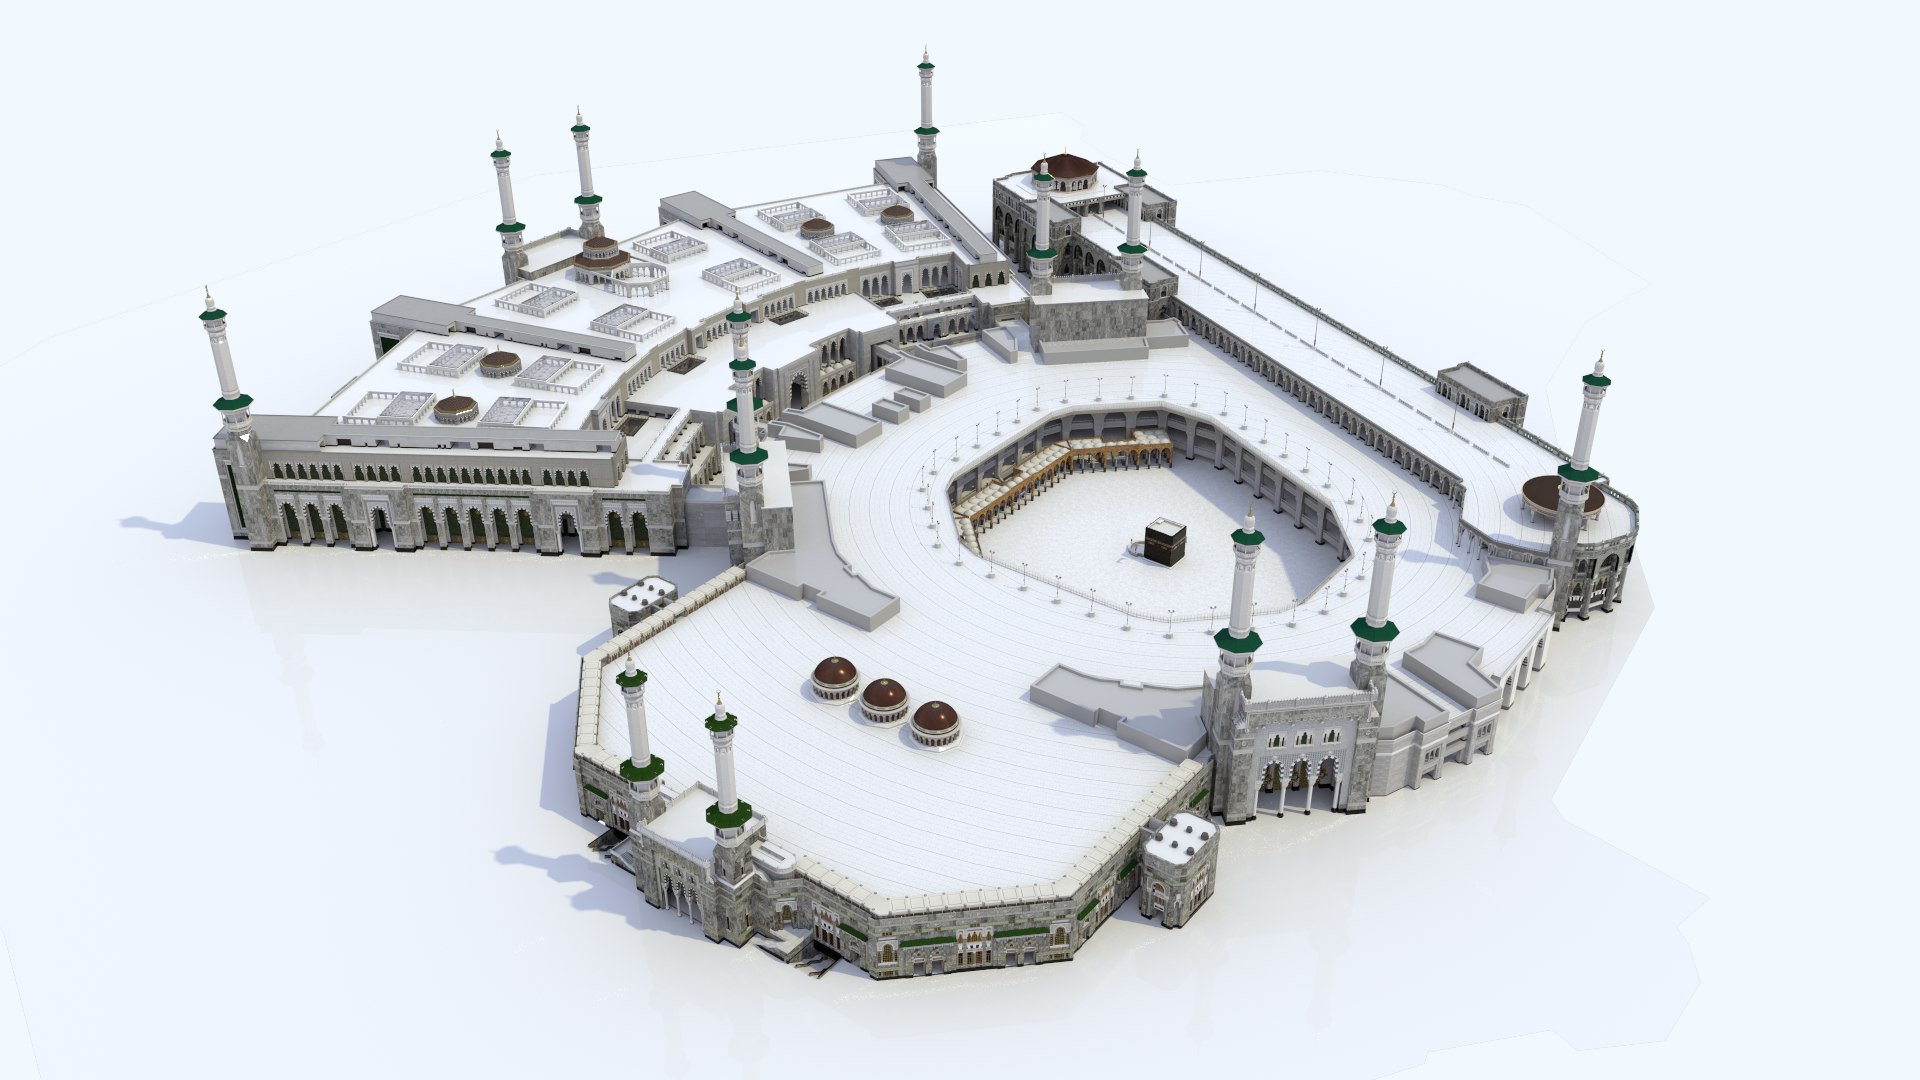 3d model masjid al haram https://p.turbosquid.com/ts-thumb/Q6/SkLfyd/bT/perspective04_new/png/1609657221/1920x1080/fit_q87/44045bbf86789db8f878e21e2a73dea2c5a14ba0/perspective04_new.jpg